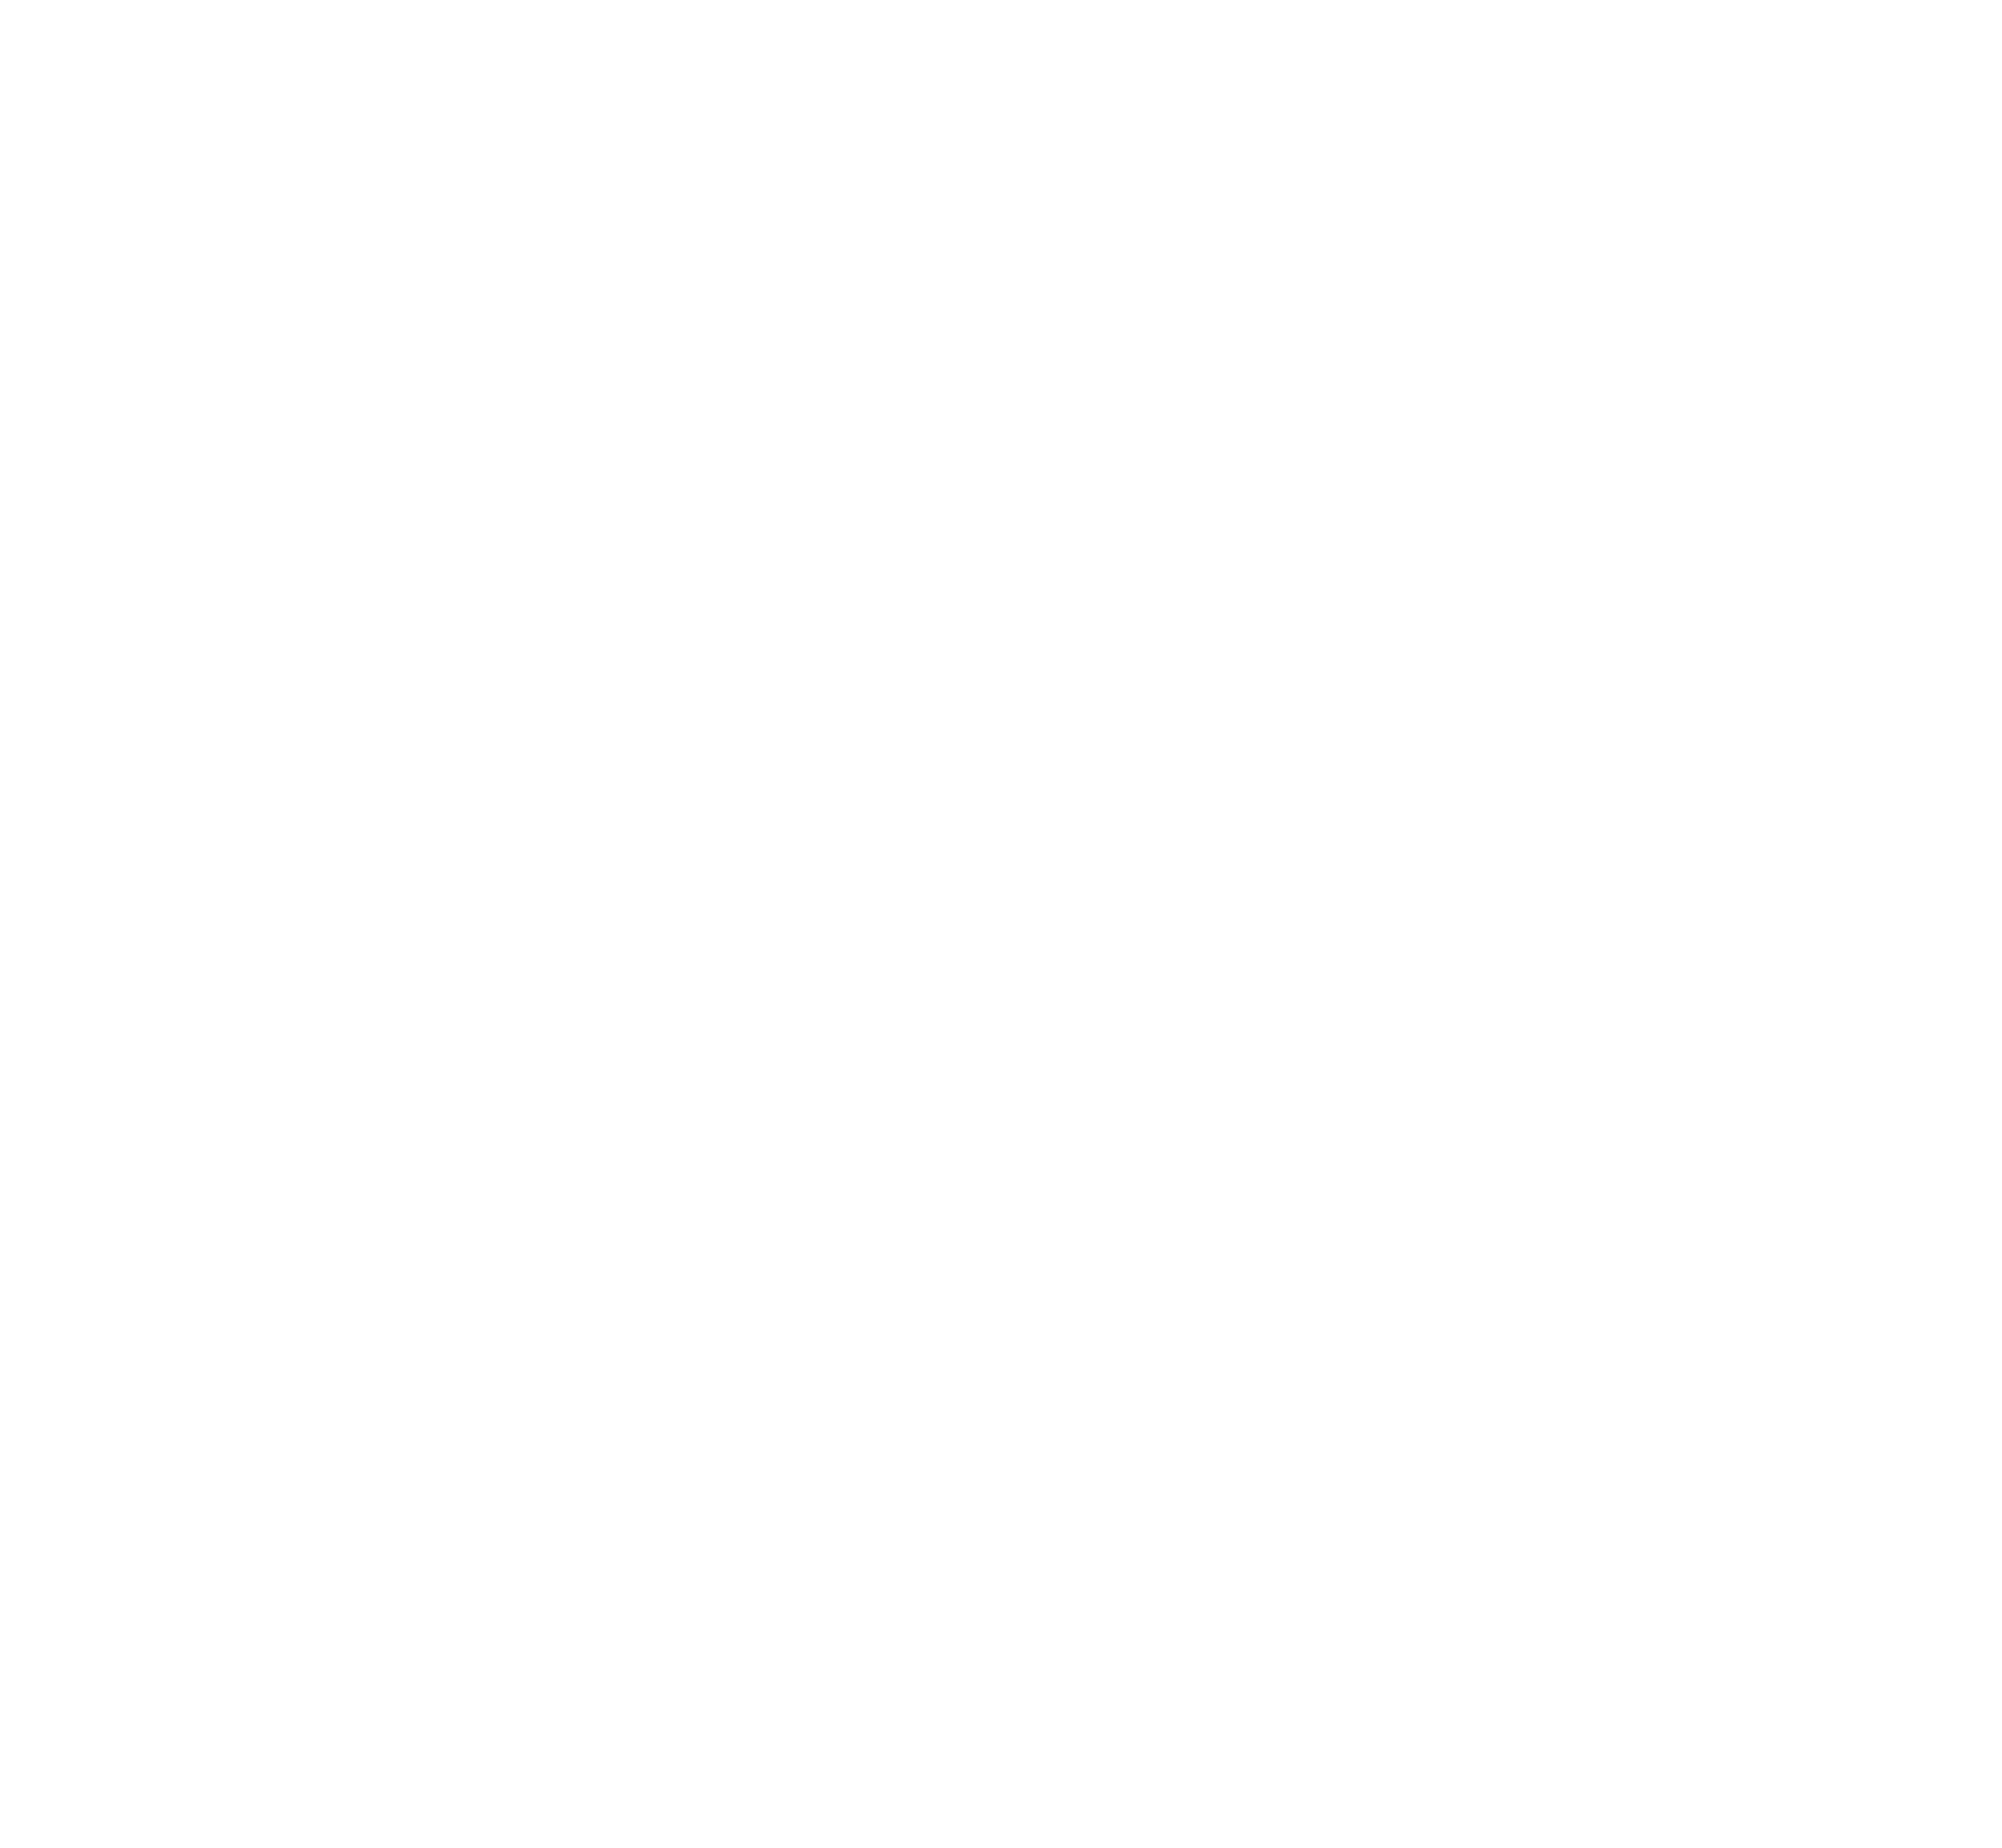 FSLA white logo